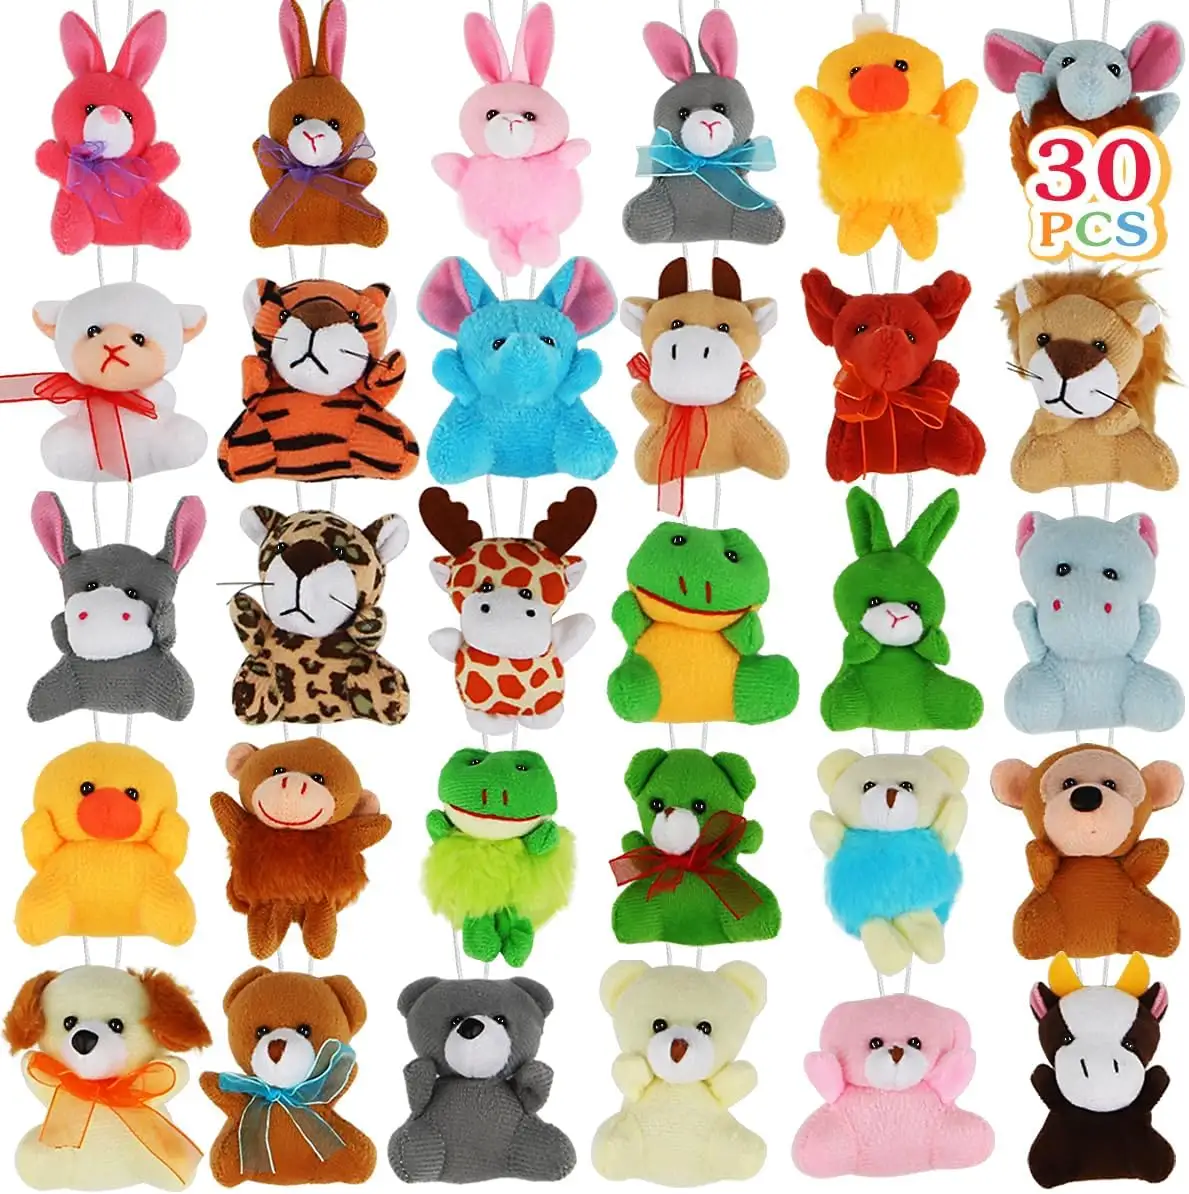 Aitbay 30パックミニぬいぐるみおもちゃセット、パーティーの記念品のためのかわいい小さなぬいぐるみキーホルダーセット、キッズバレンタインG